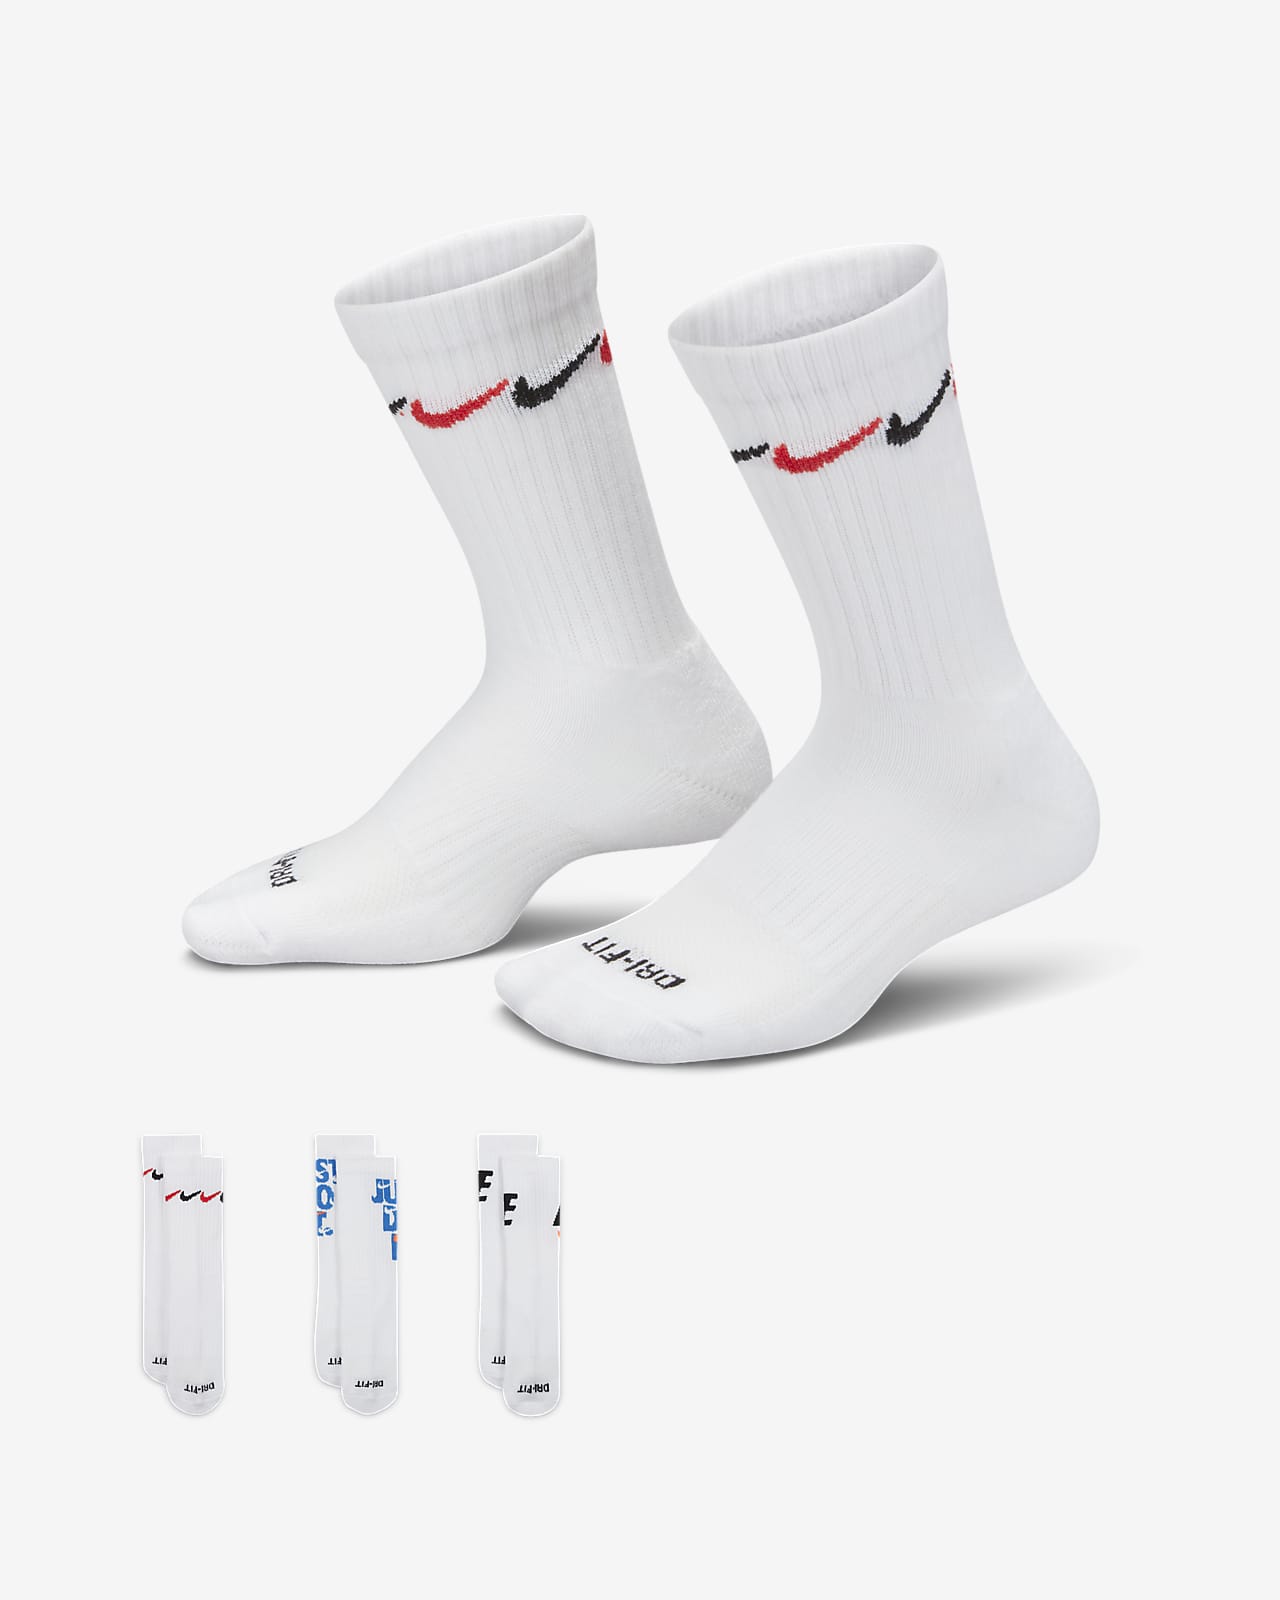 Nike Graphic Dri-FIT Crew Socks (3 Pairs) Little Kids' Socks